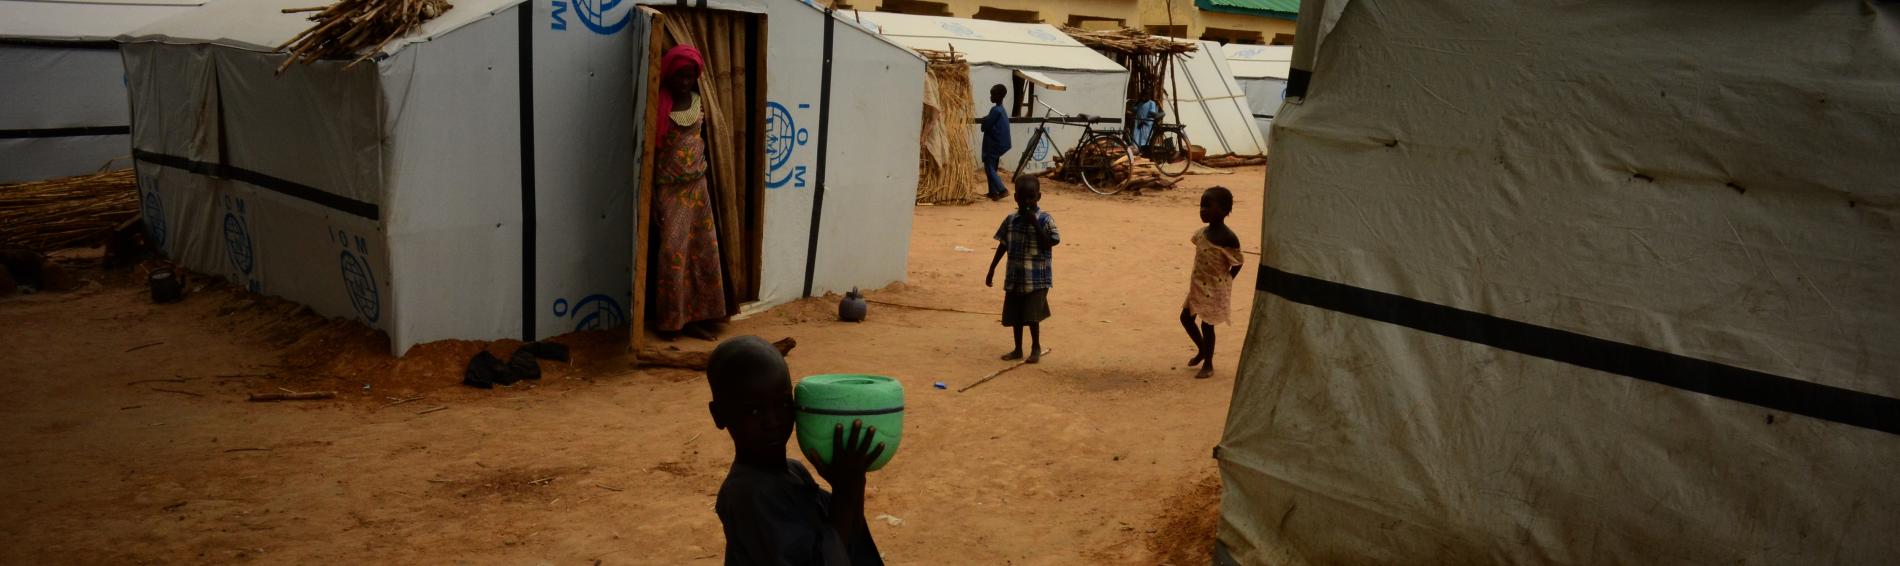 Hungernde Mädchen in Nigeria warten auf Hilfe. Foto: Reuters